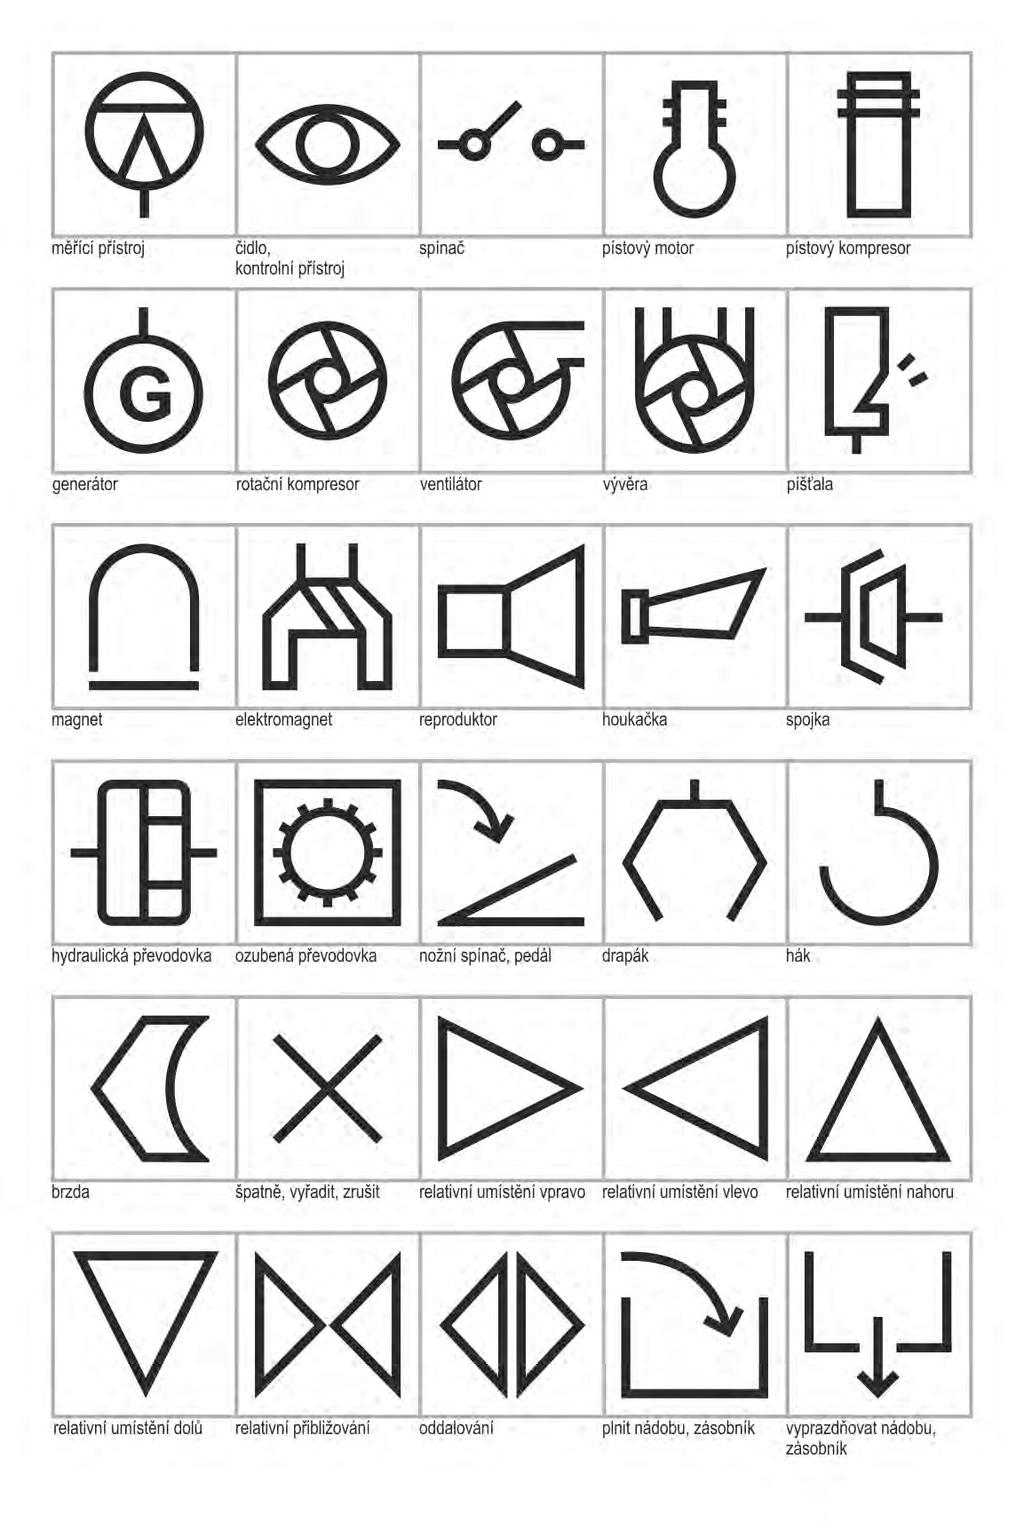 Výsledky dizertační práce Symboly a znaky 1979 Uvedeny jako grafická úprava a rozšíření symbolů k normě